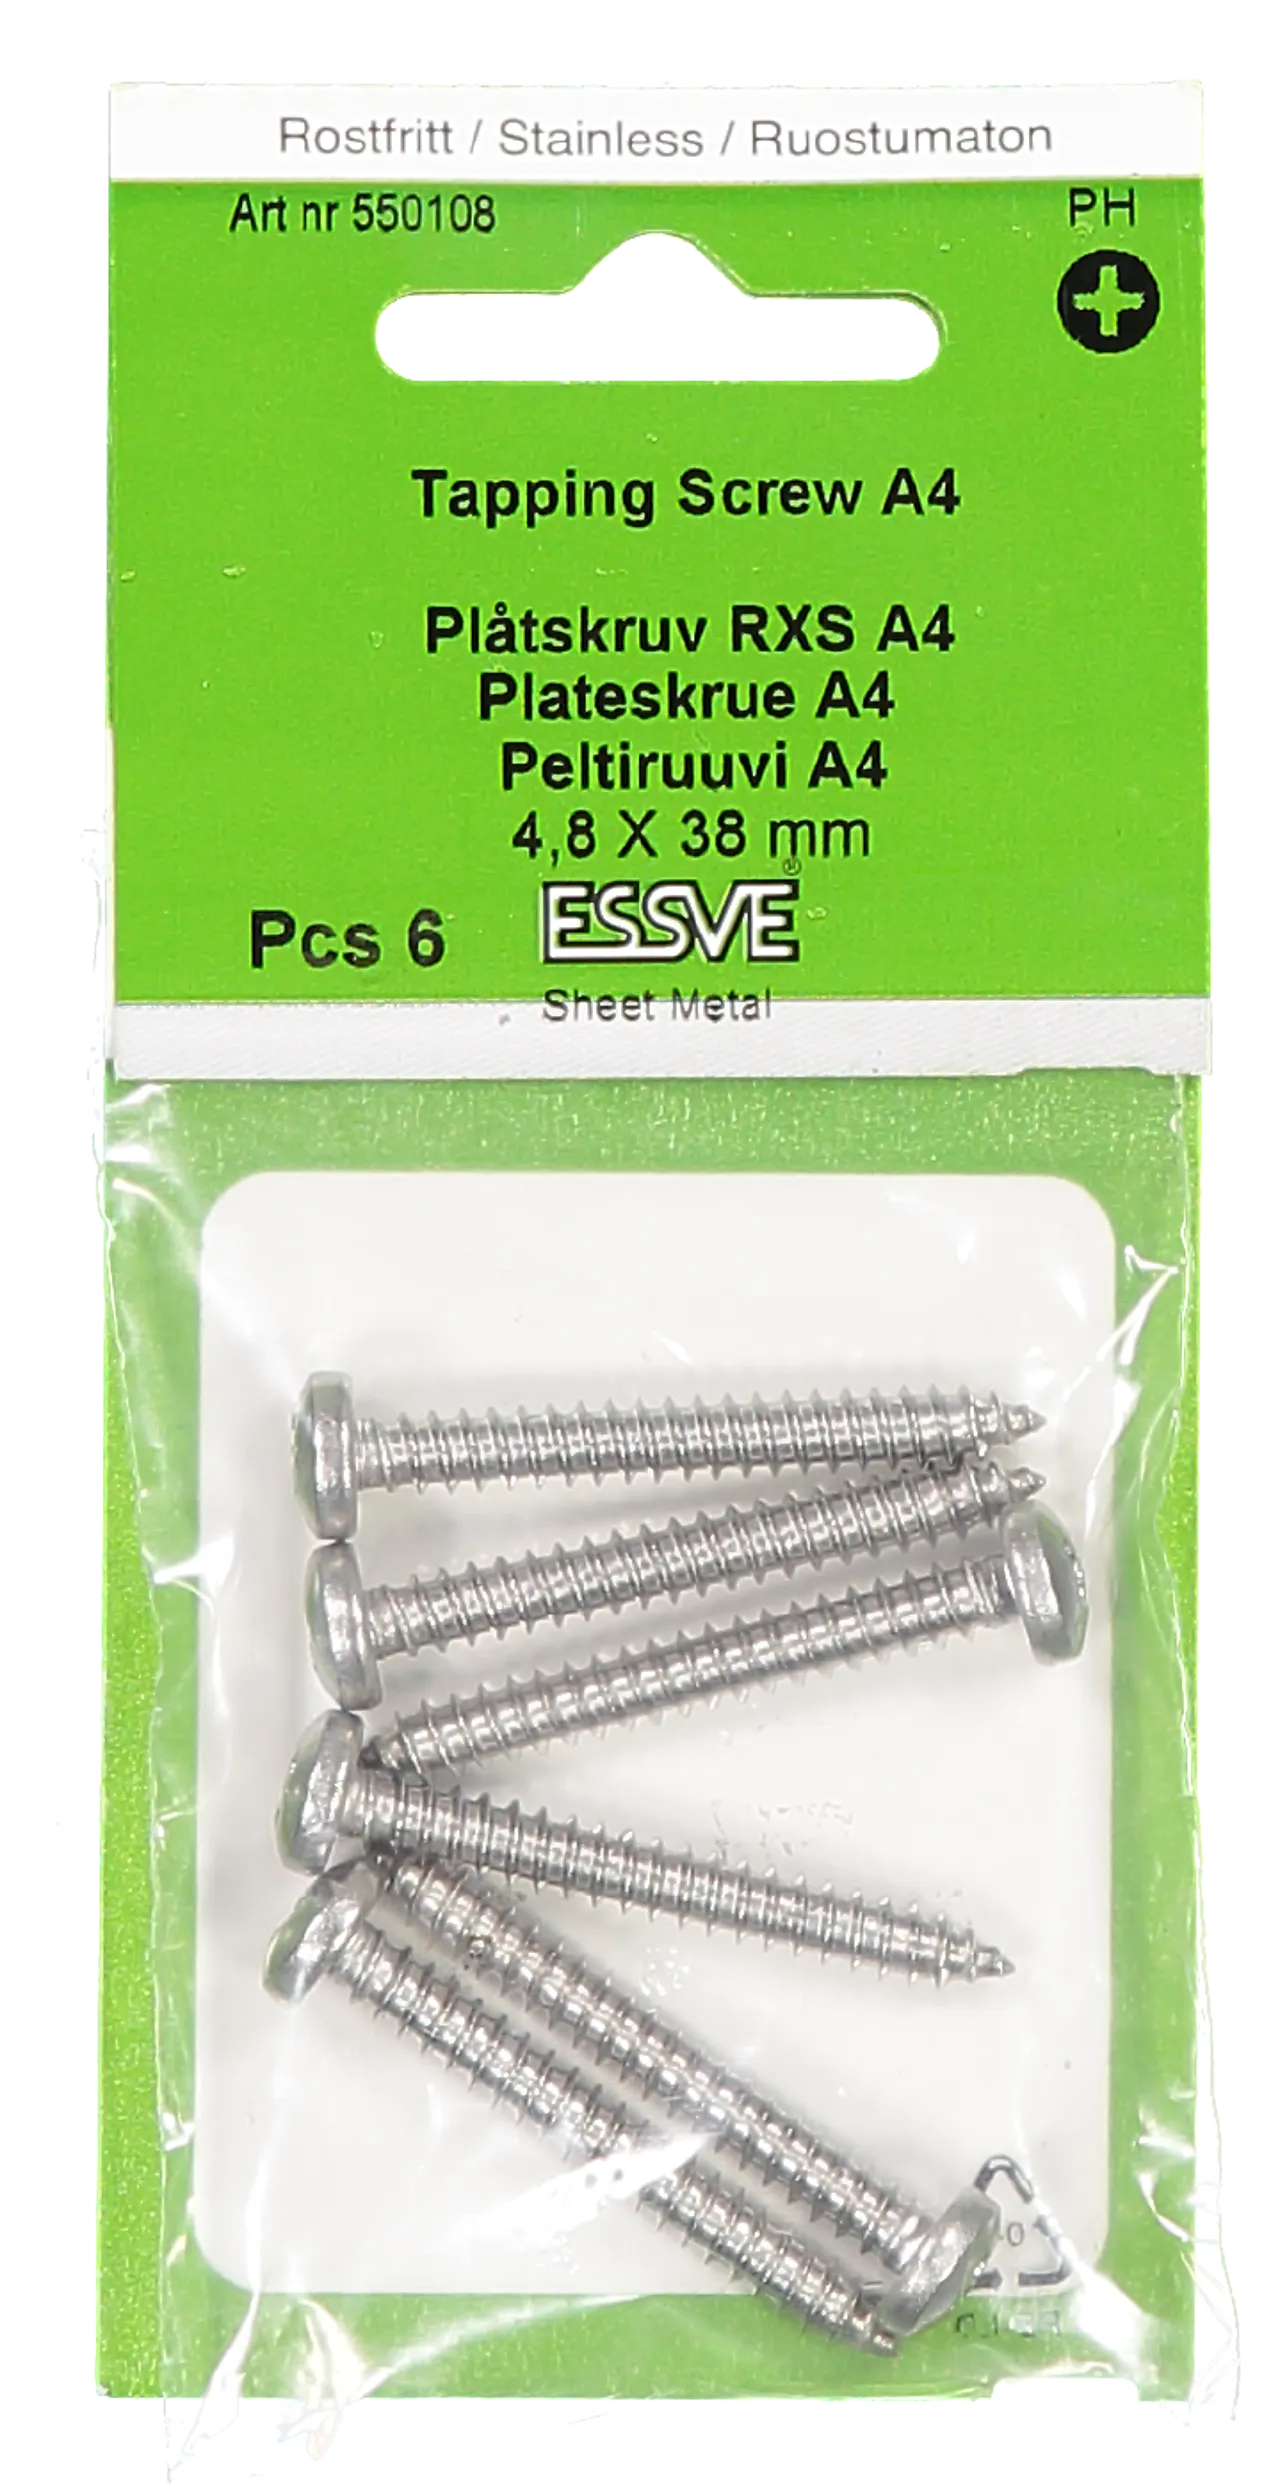 Plateskrue ph 4,8x38 a4 a-6syrefast panhode pz2 tre/stål null - null - 2 - Miniatyr